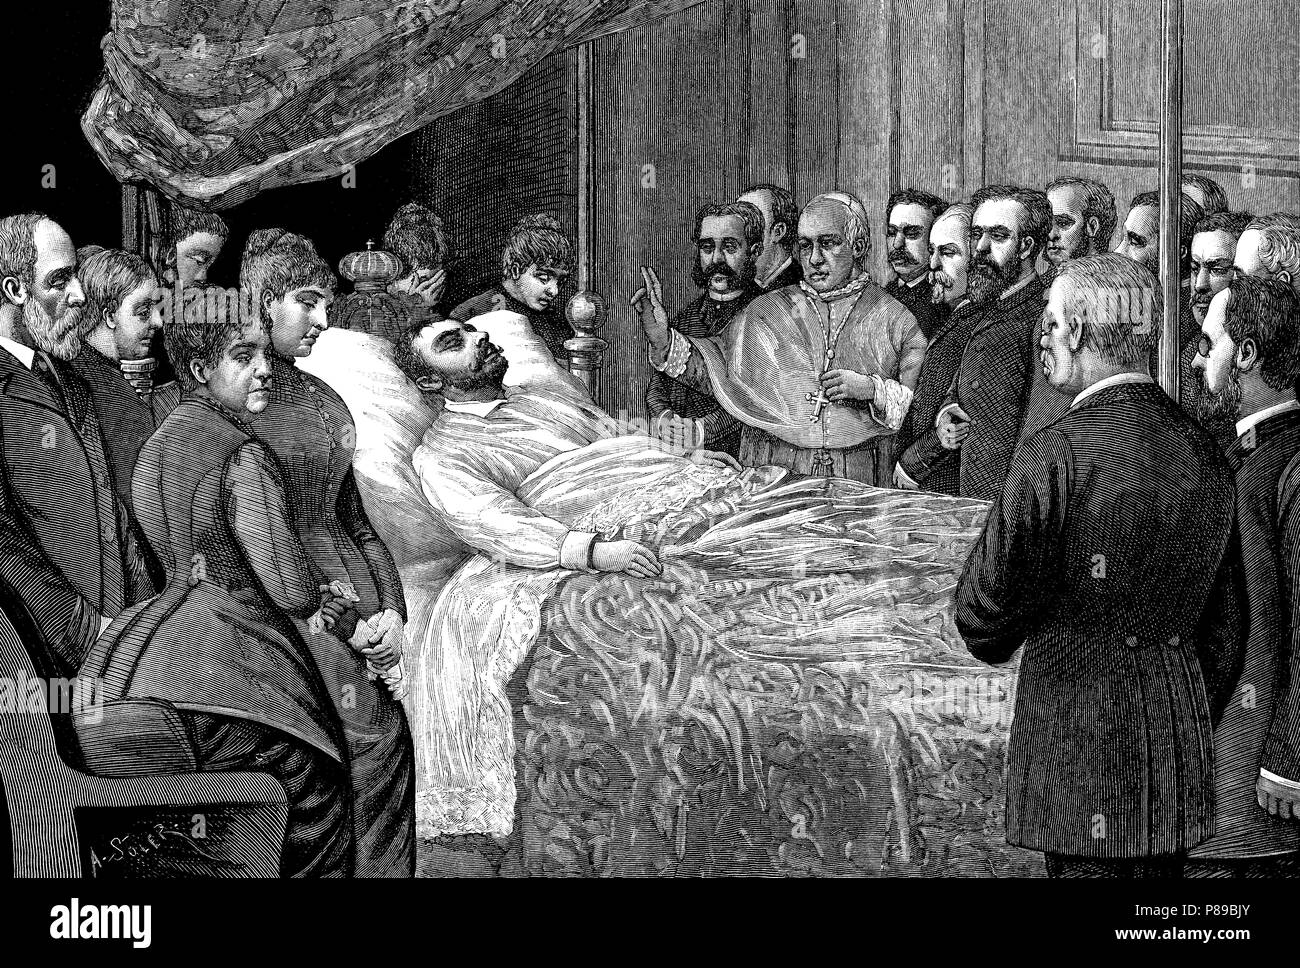 España. El rey Alfonso XII (1857-1885) en su lecho de muerte el 25 de noviembre de 1885. Grabado de 1885. Stock Photo